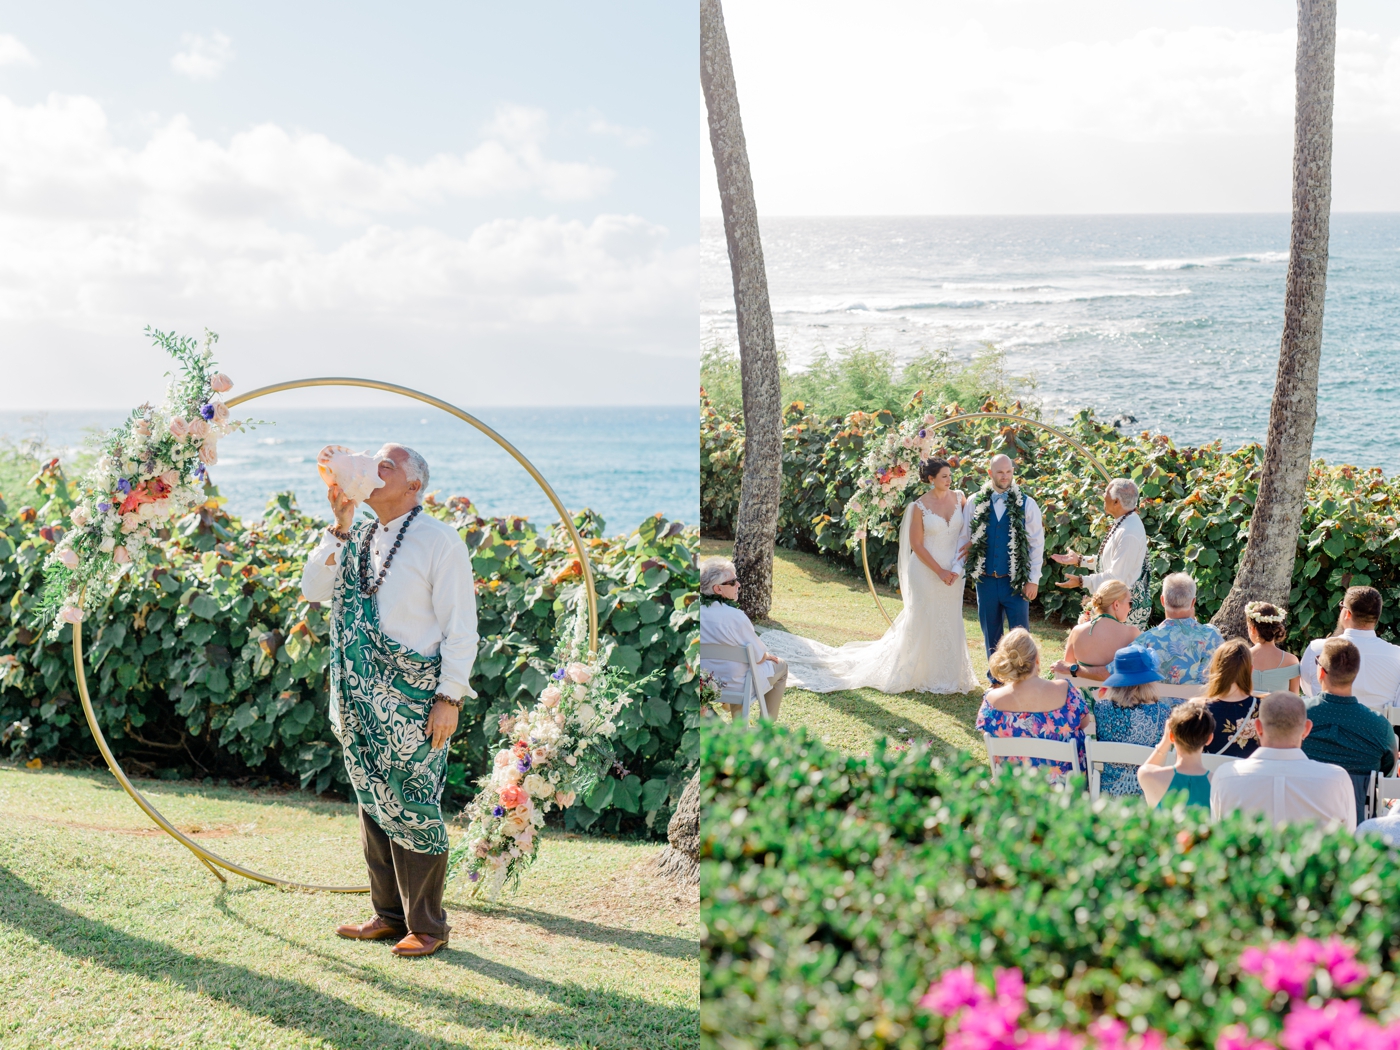 Wedding ceremony overlooking the ocean at Merriman’s in Kapalua